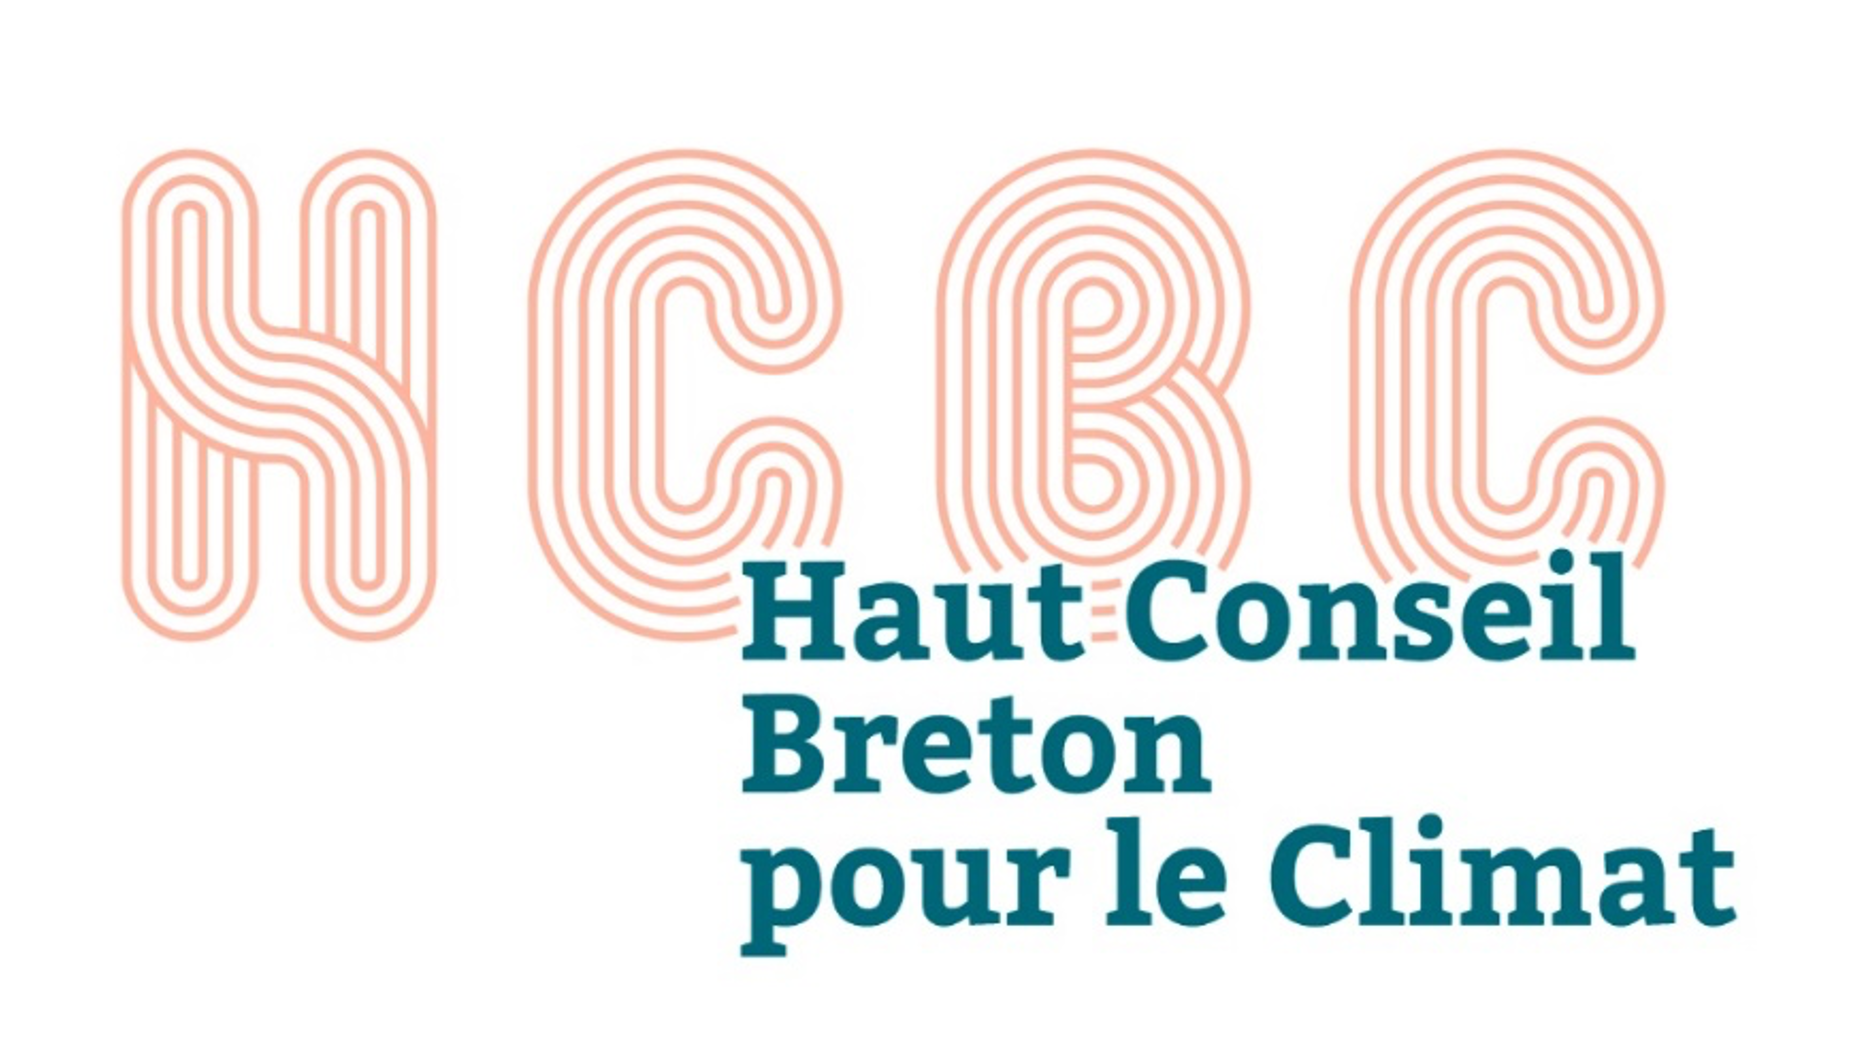 Haut conseil breton pour le Climat